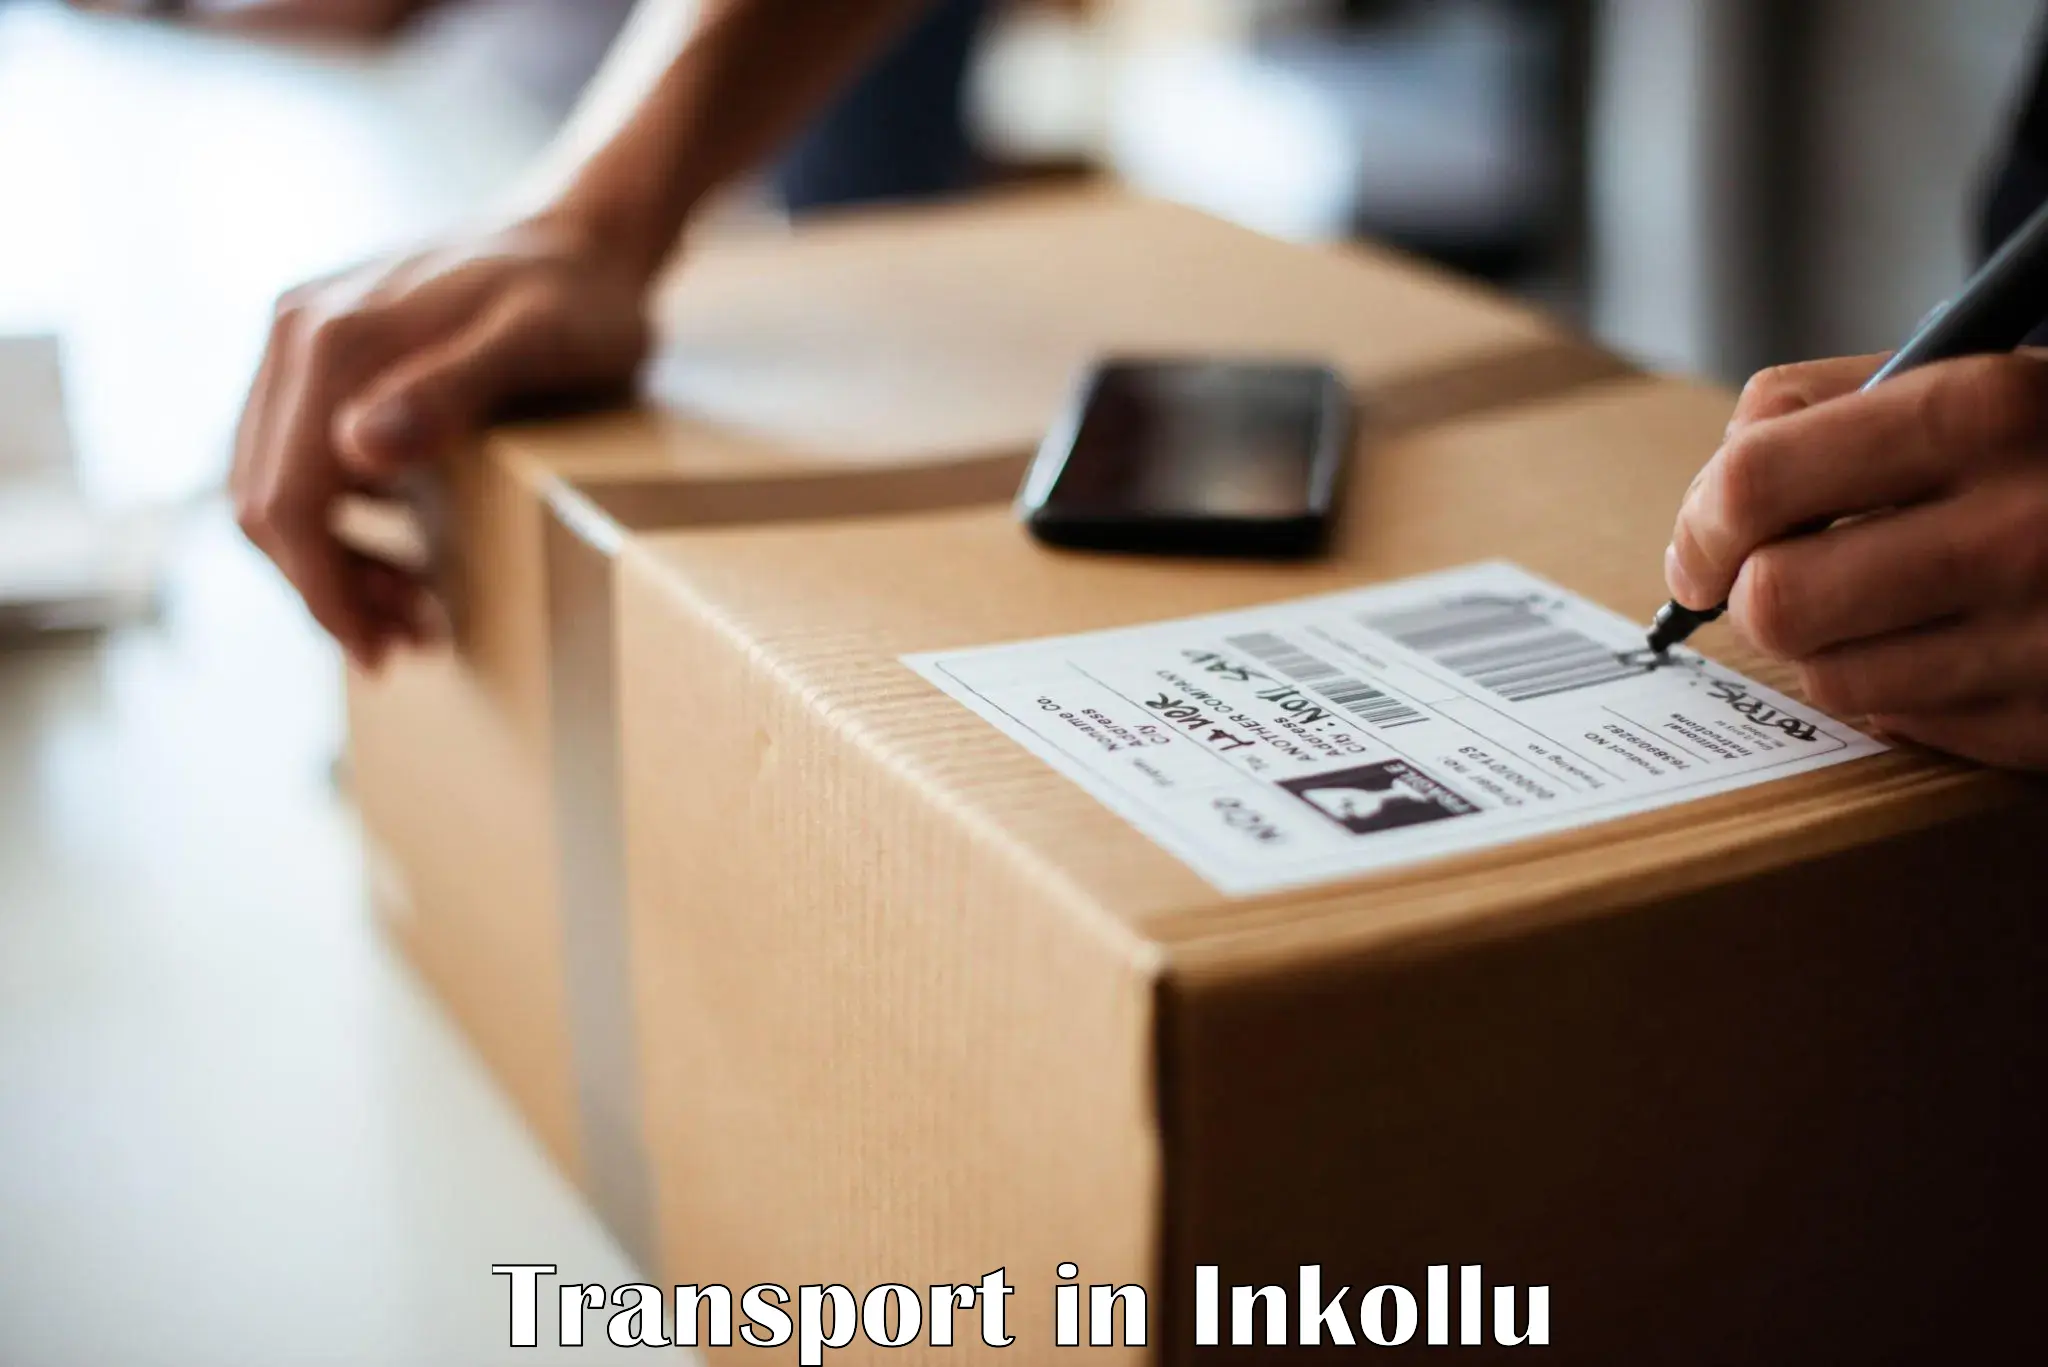 Daily parcel service transport in Inkollu